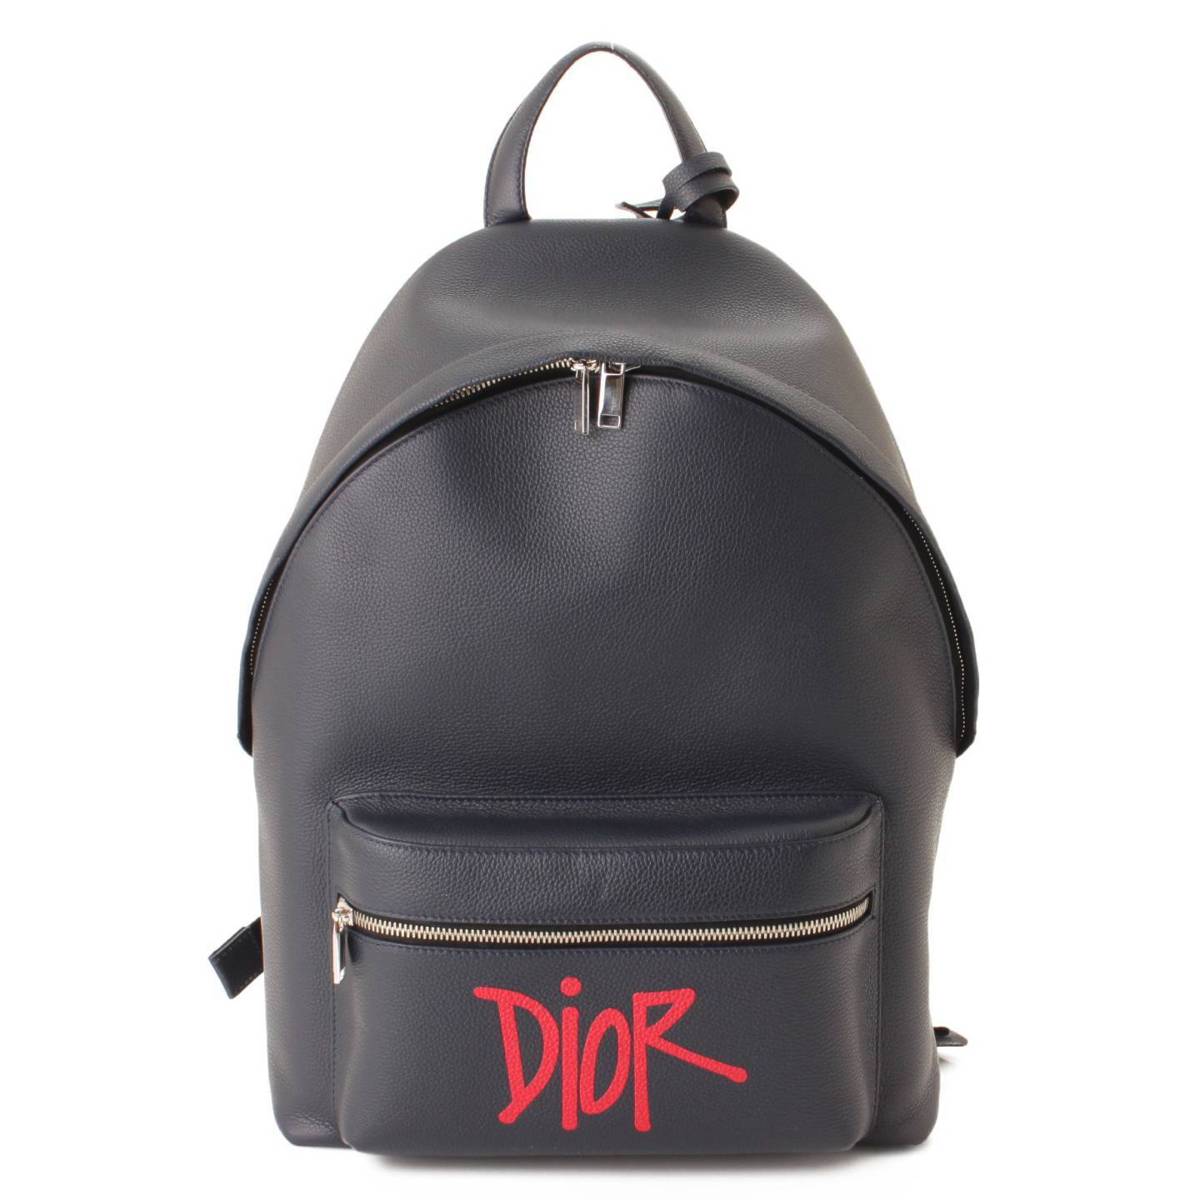 ディオール Dior オブリーク トロッター バックパック リュックサック キャンバス/レザー ネイビー